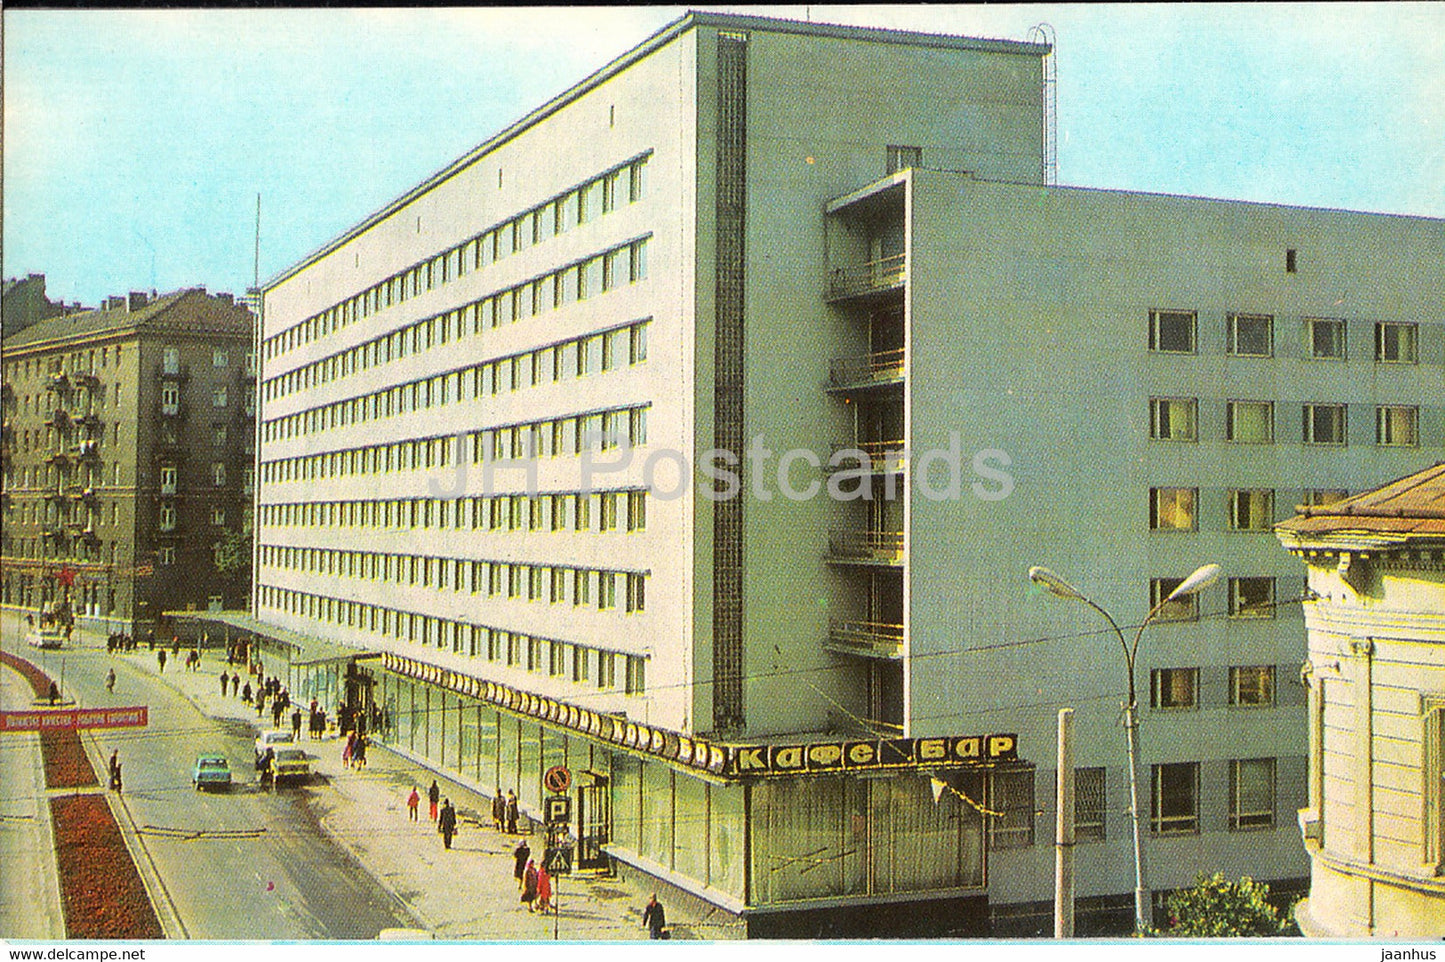 Lviv - Lvov - hotel Lviv - 1977 - Ukraine USSR - unused - JH Postcards